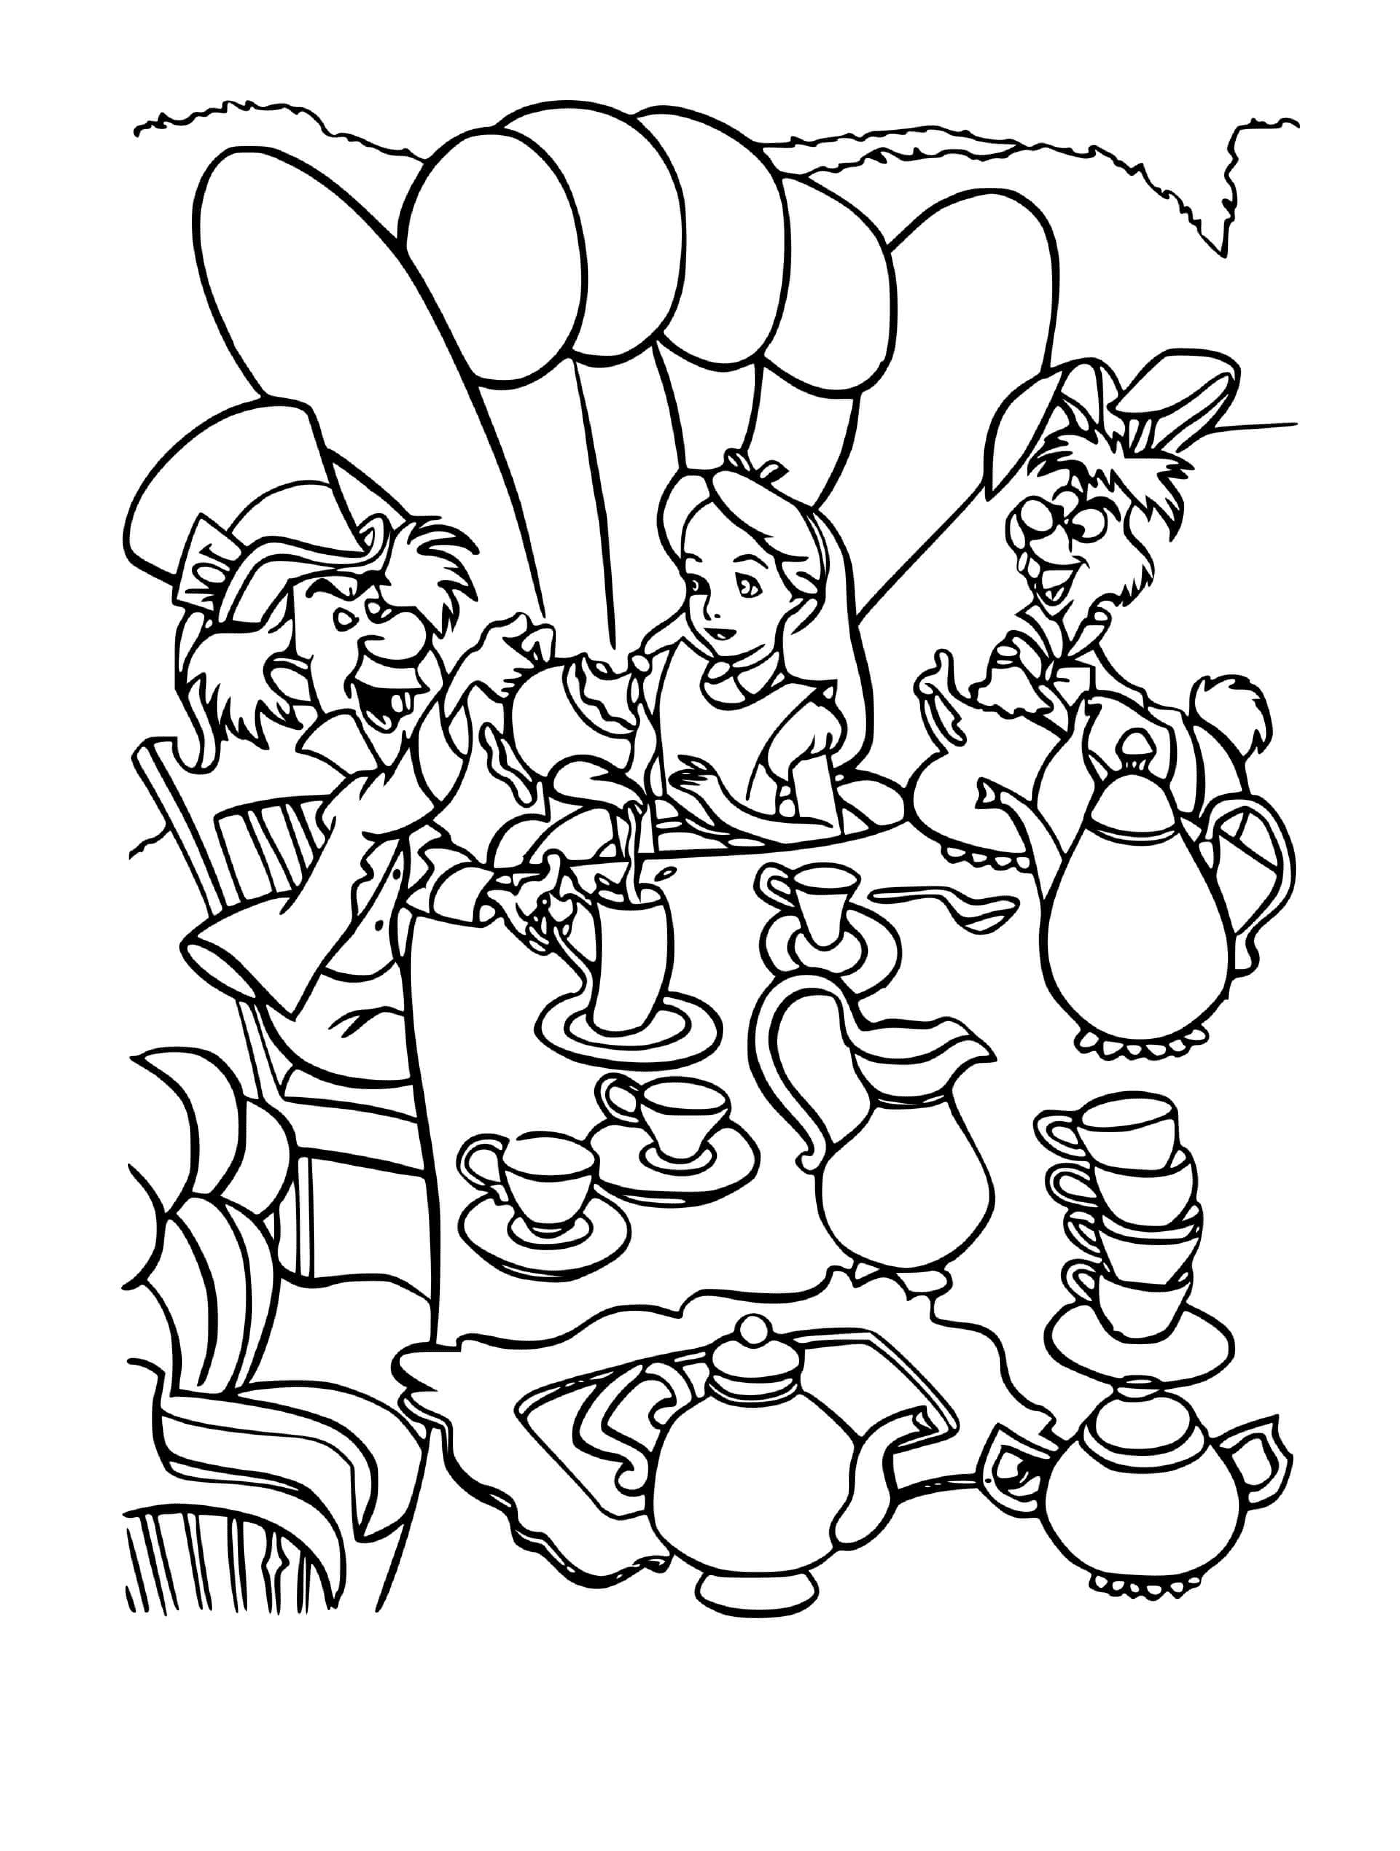   Un groupe de personnes assises autour d'une table, buvant du chocolat chaud avec le chapelier fou 